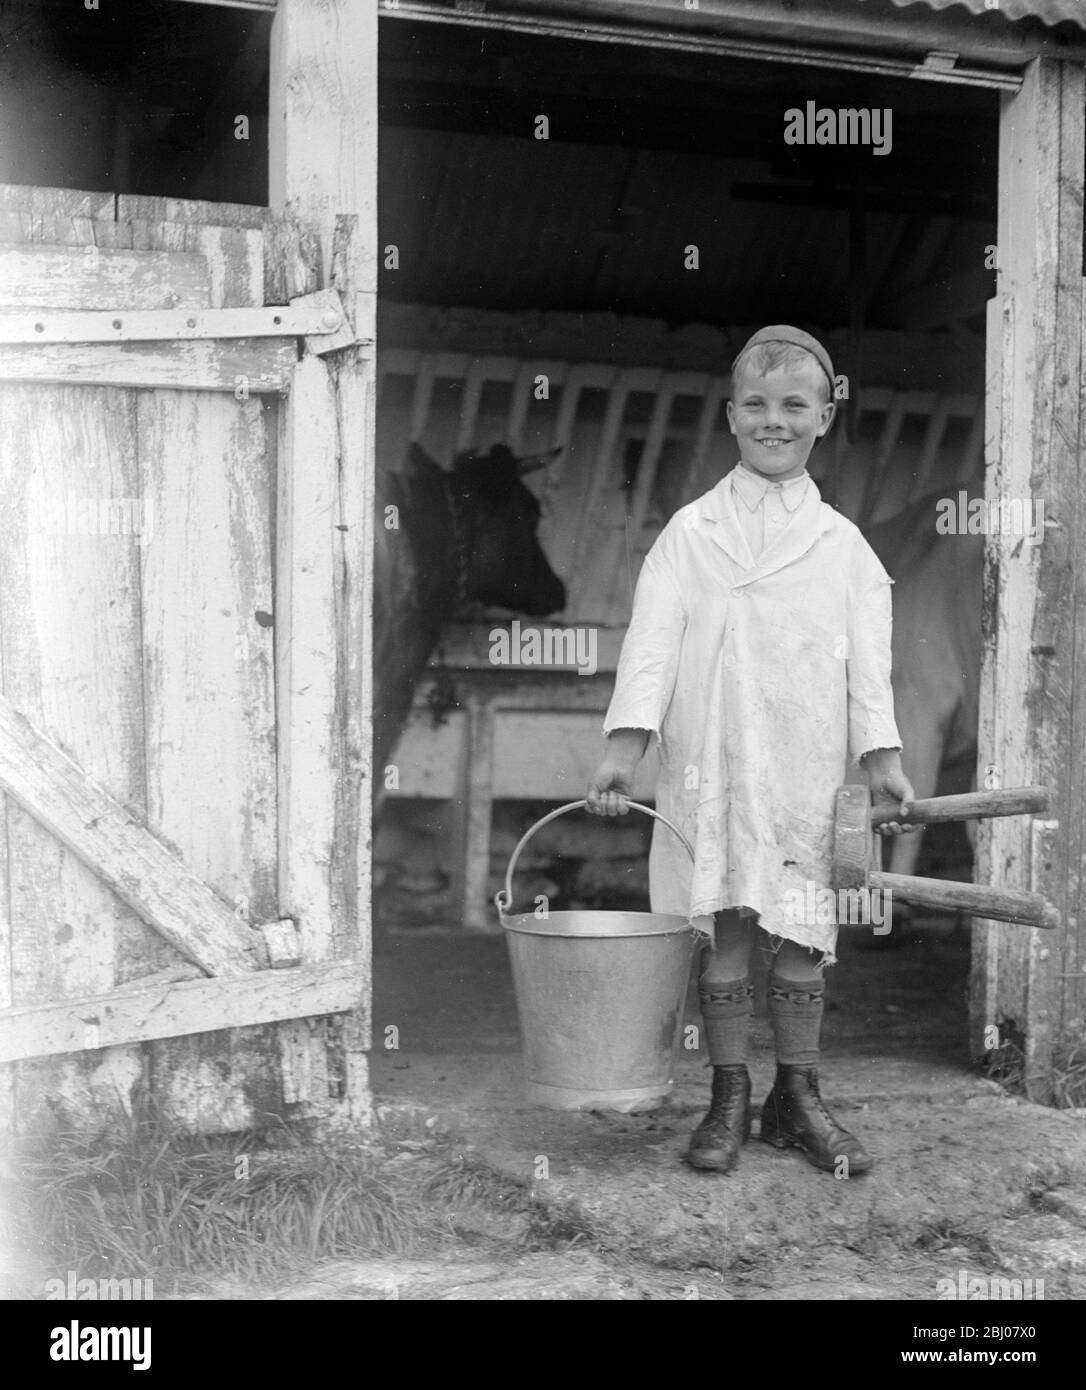 Ein kleiner Junge machte sich auf, um die Kühe mit seinem Eimer und Melkhocker zu melken. England. - Ende der 1940er Jahre, Anfang der 1950er Jahre Stockfoto